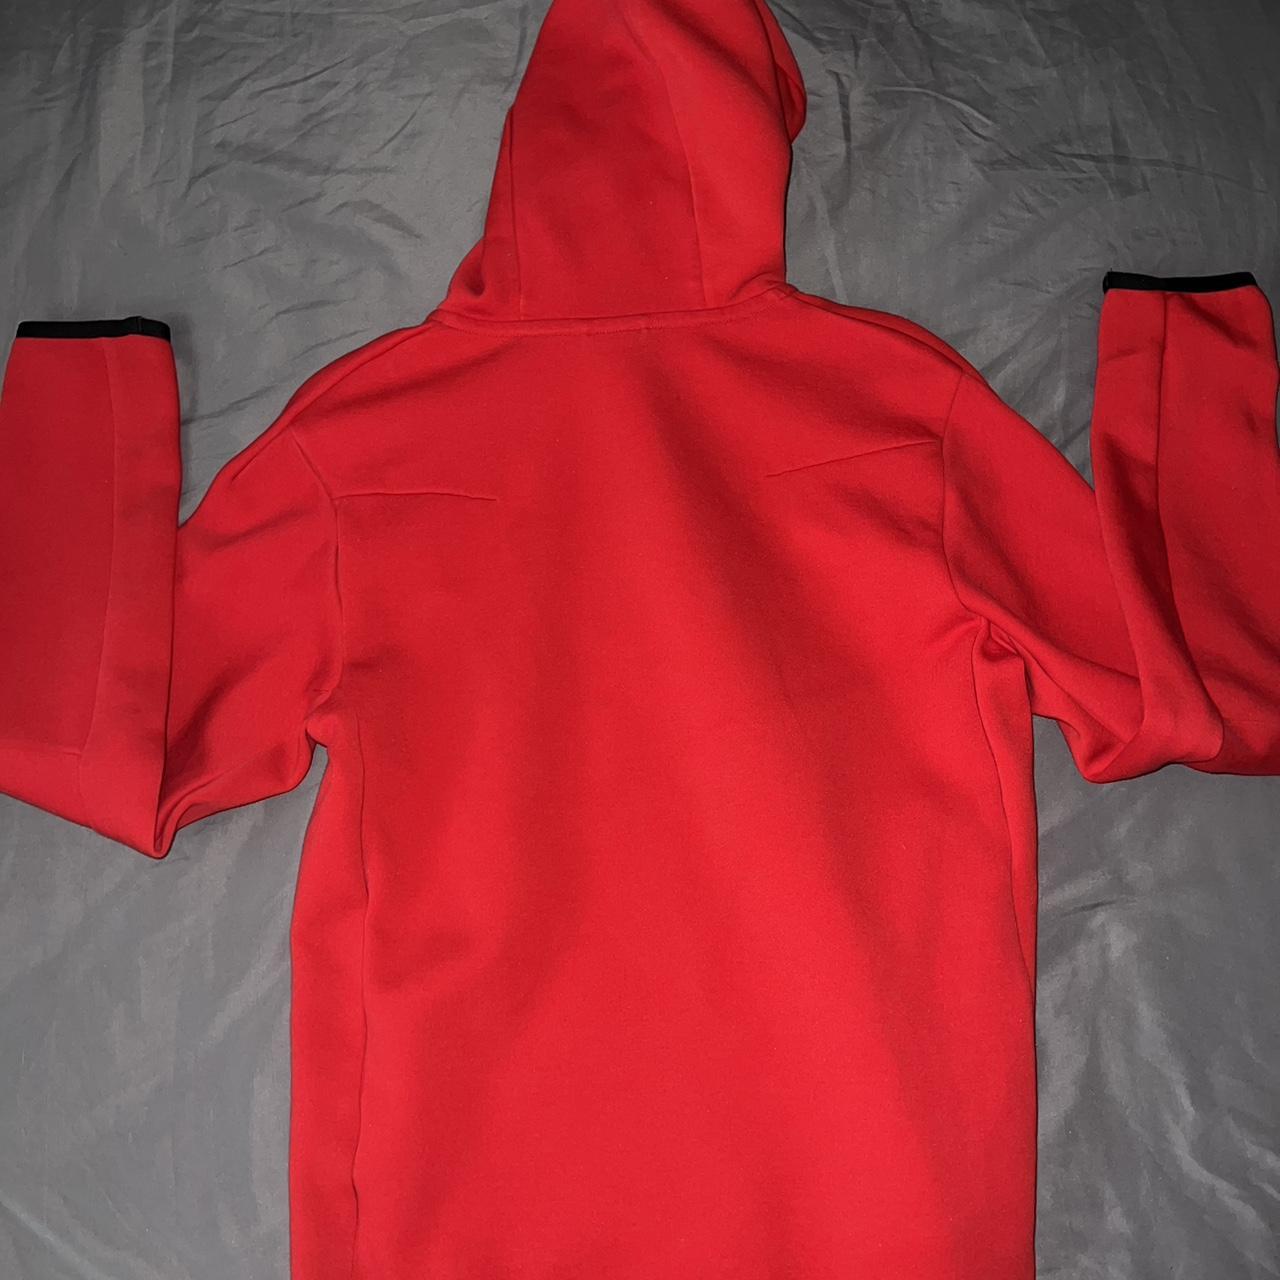 red nike tech fleece hoodie ! - size small - 10/10... - Depop